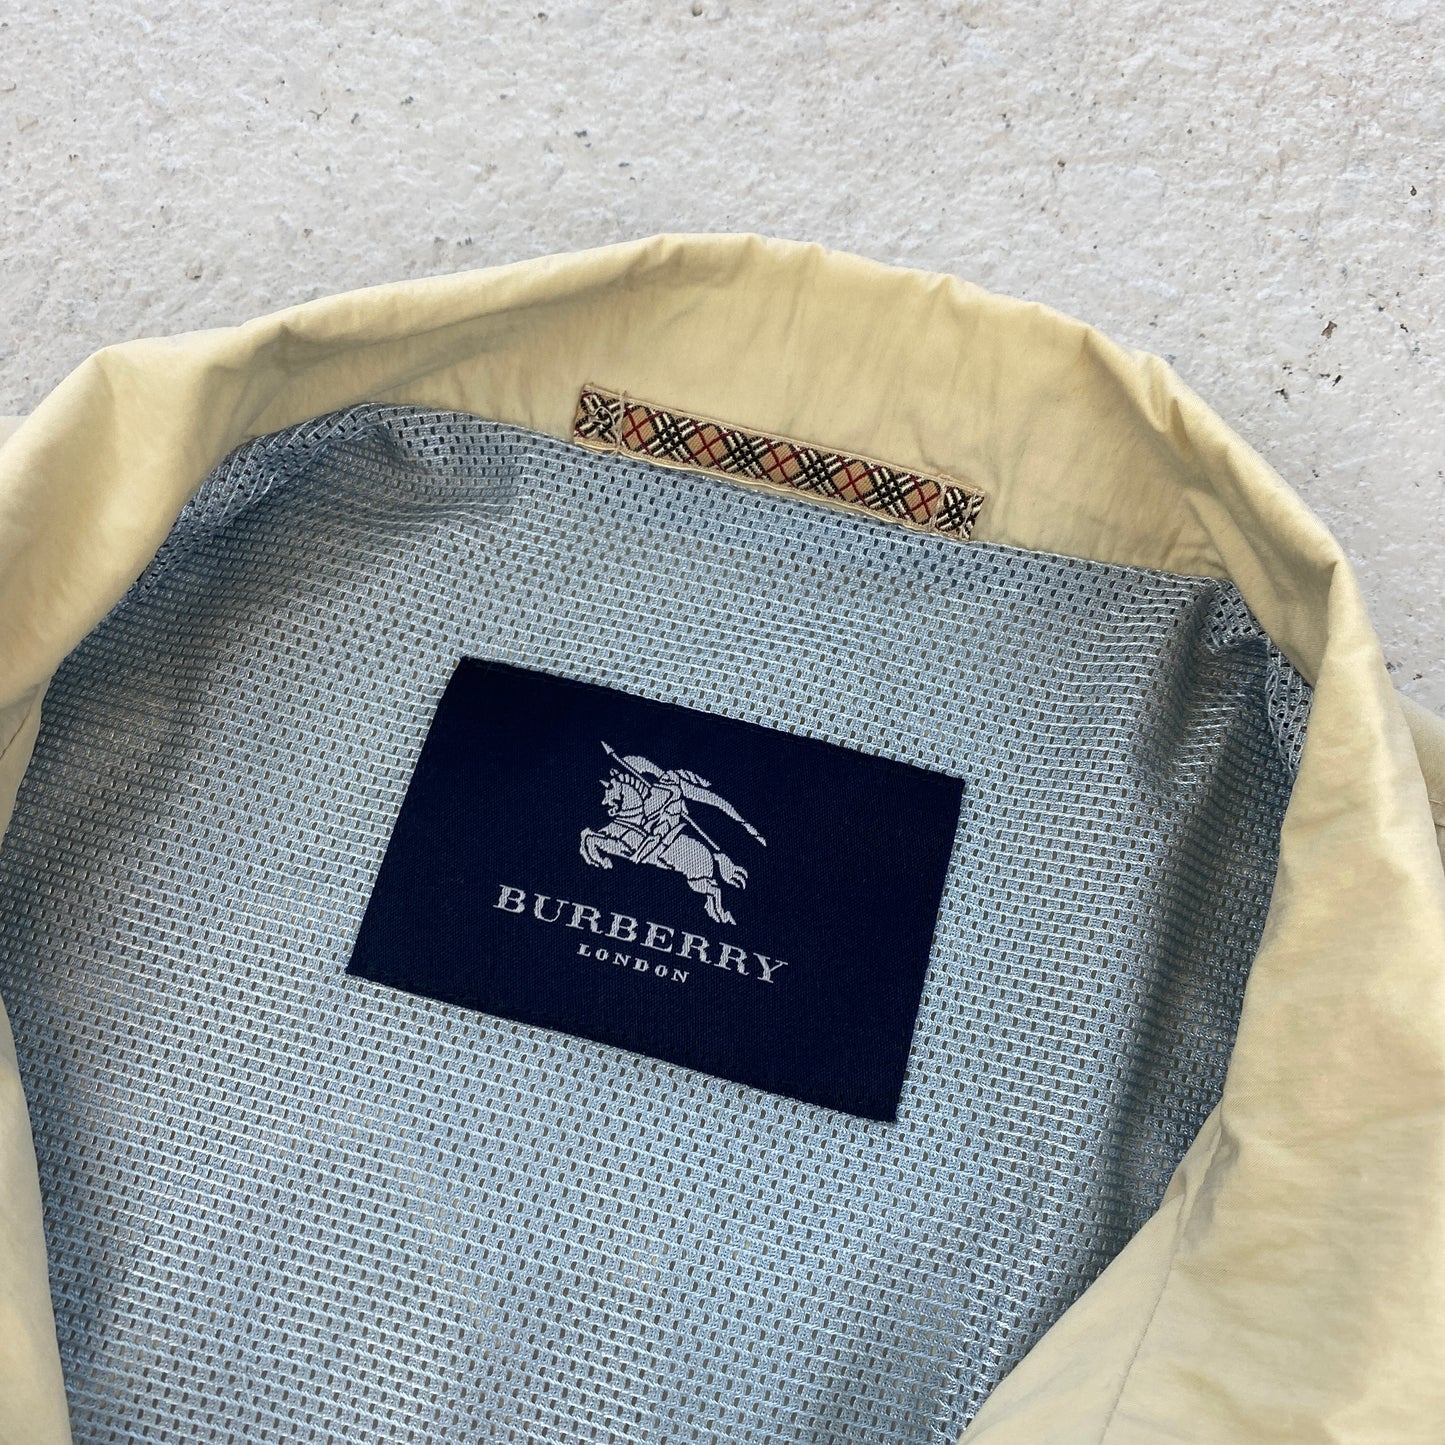 Burberry harrington jacket (M-L)